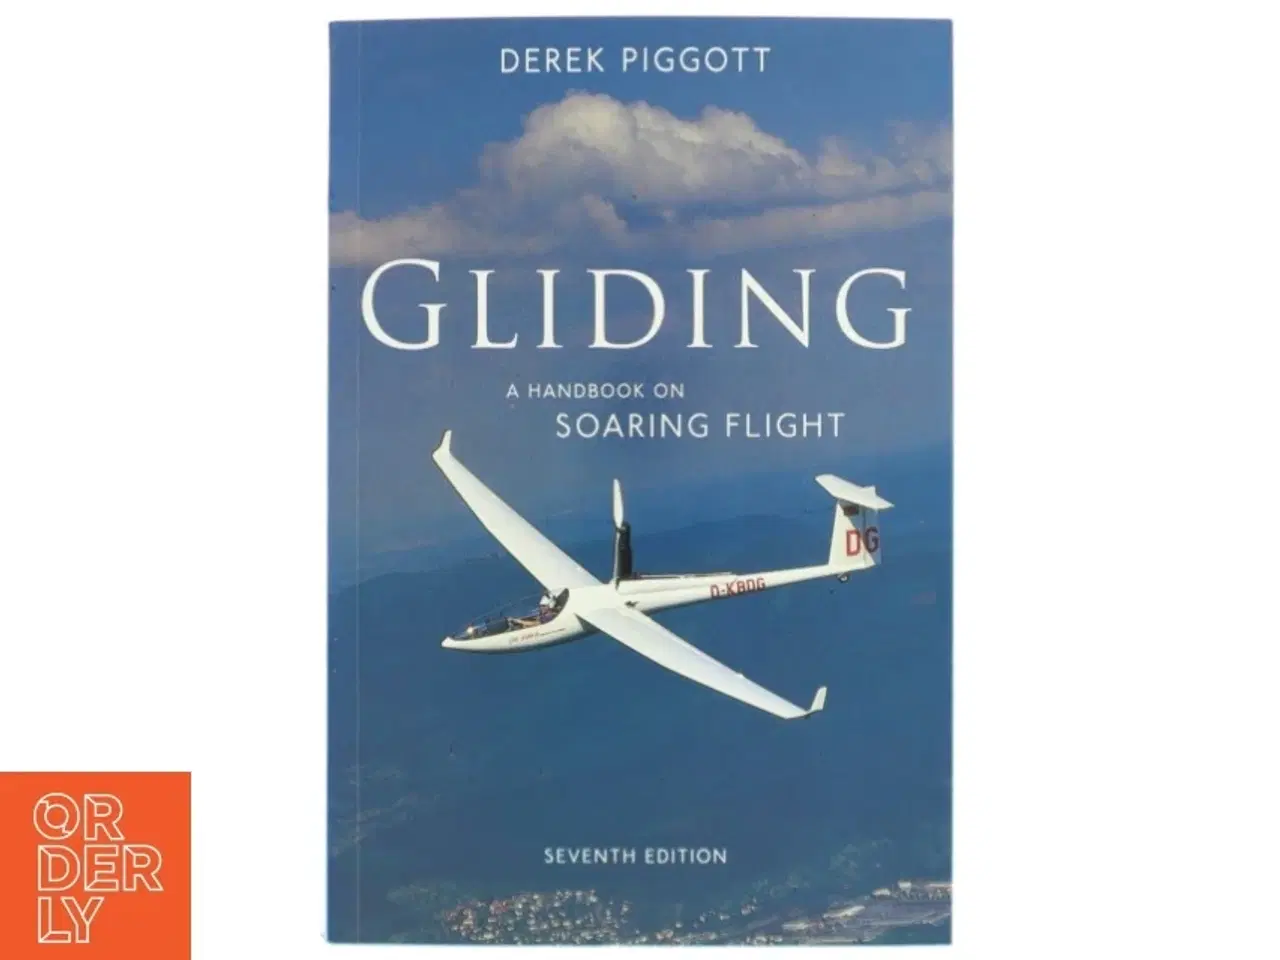 Billede 1 - Gliding af Derek Piggott (Bog)